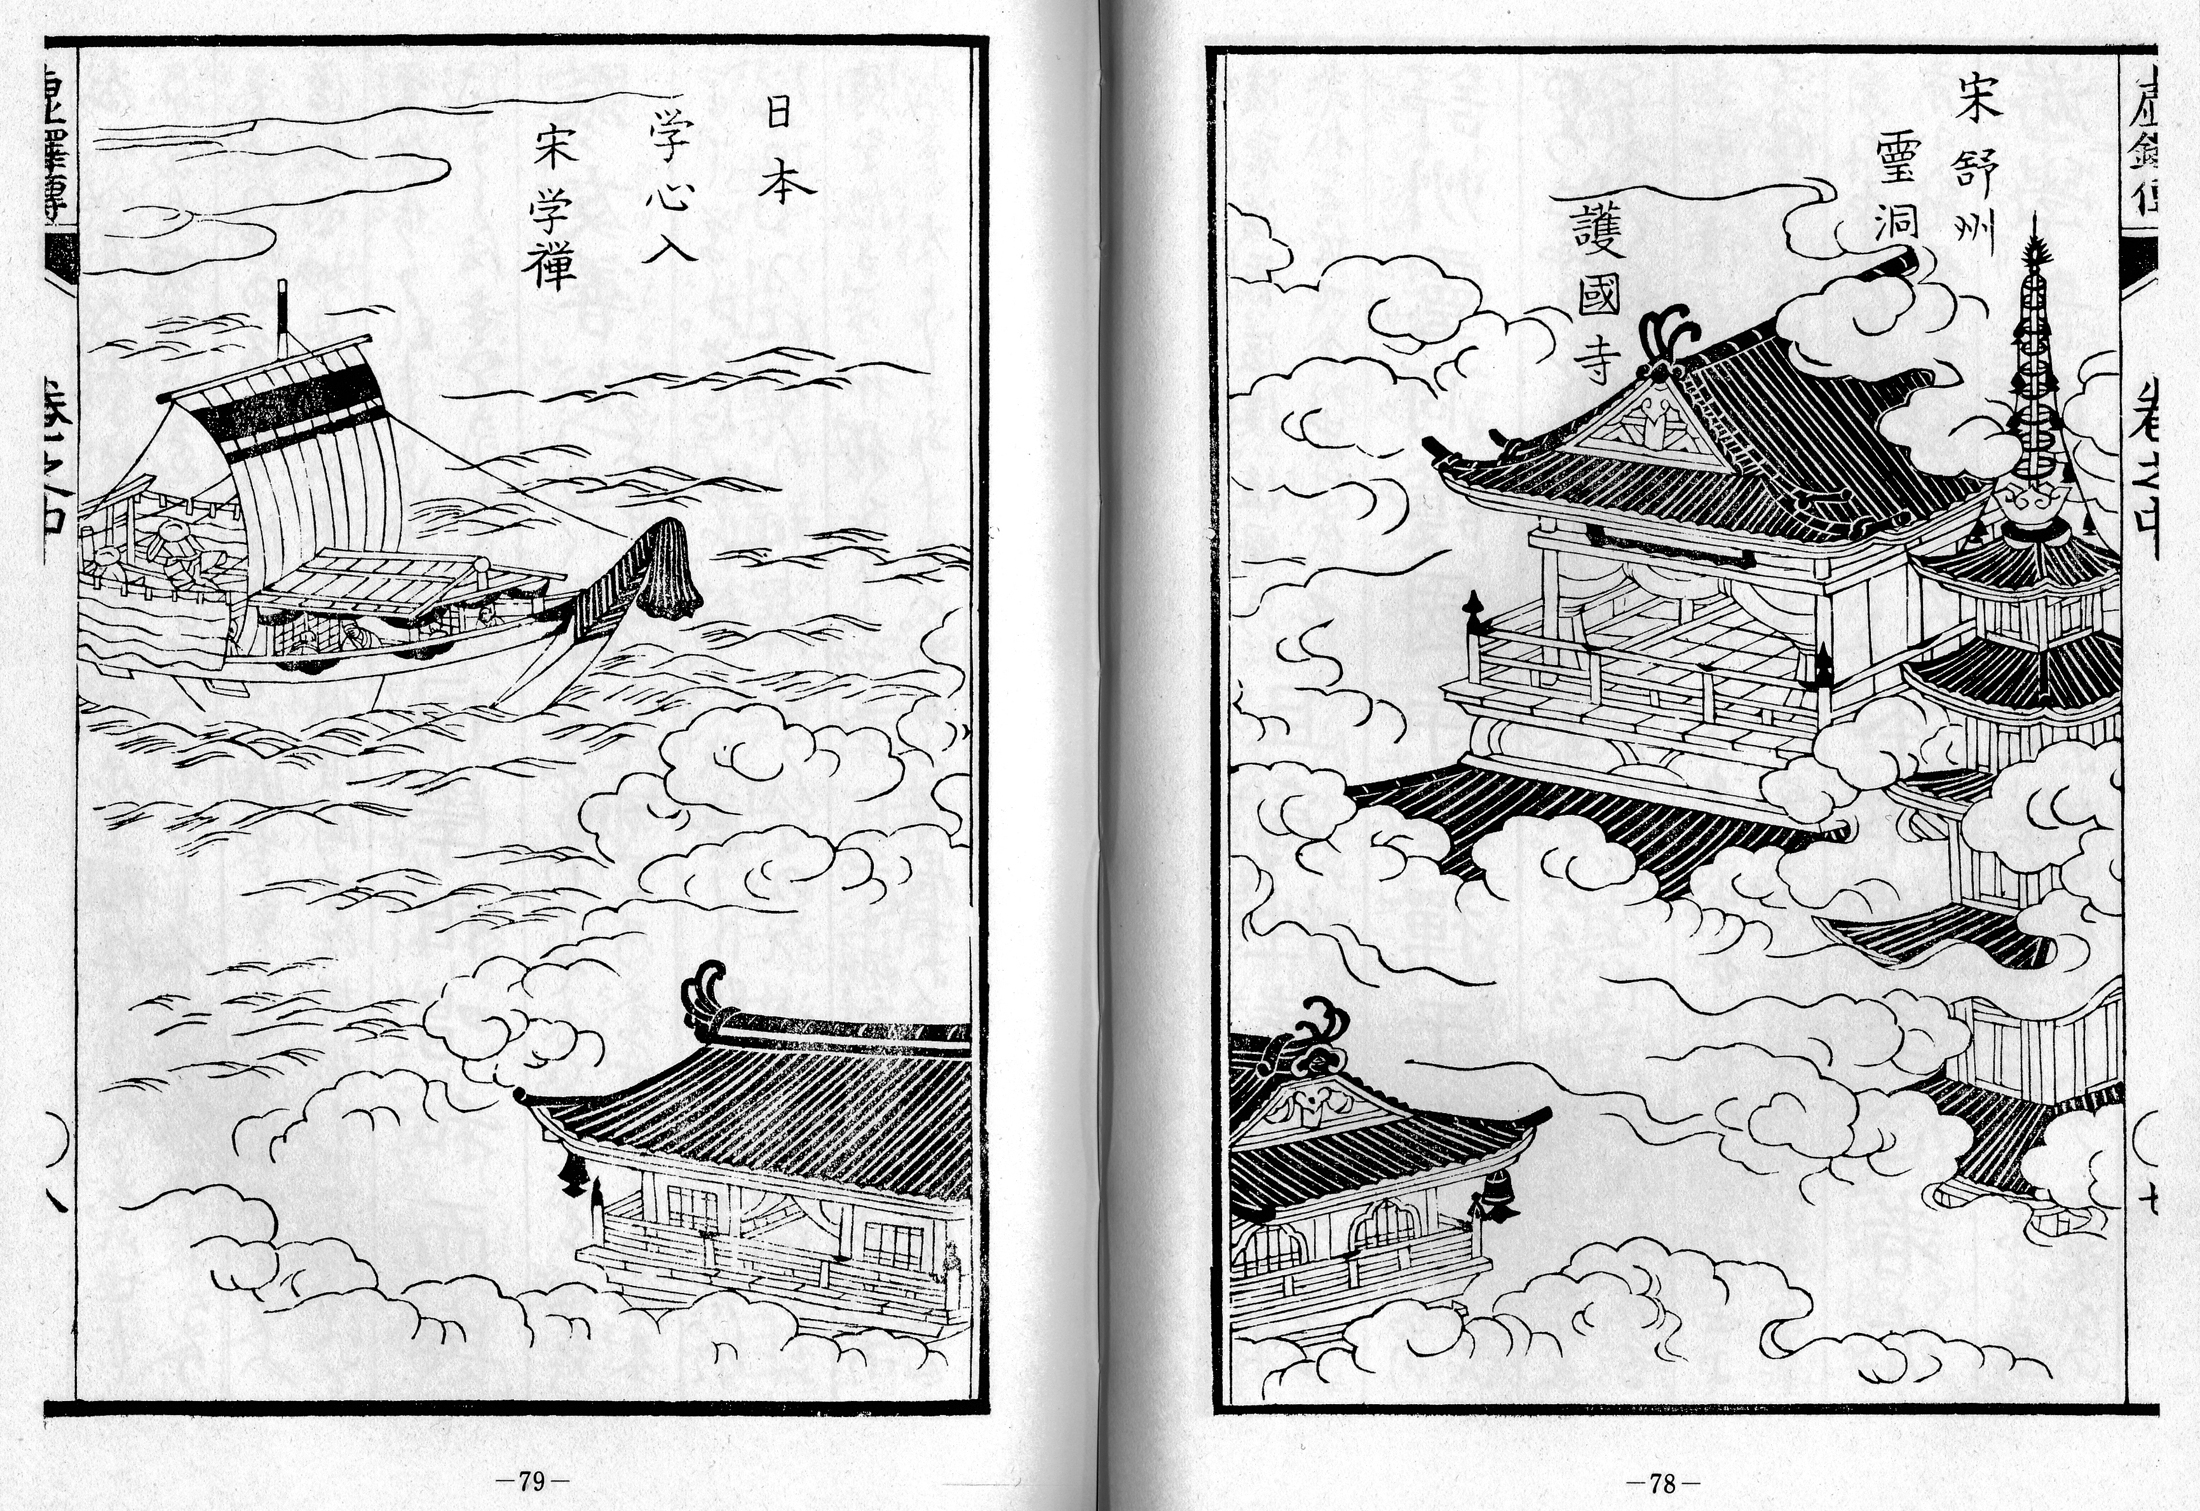 Kyotaku denki kokujikai illustration pp. 78-79